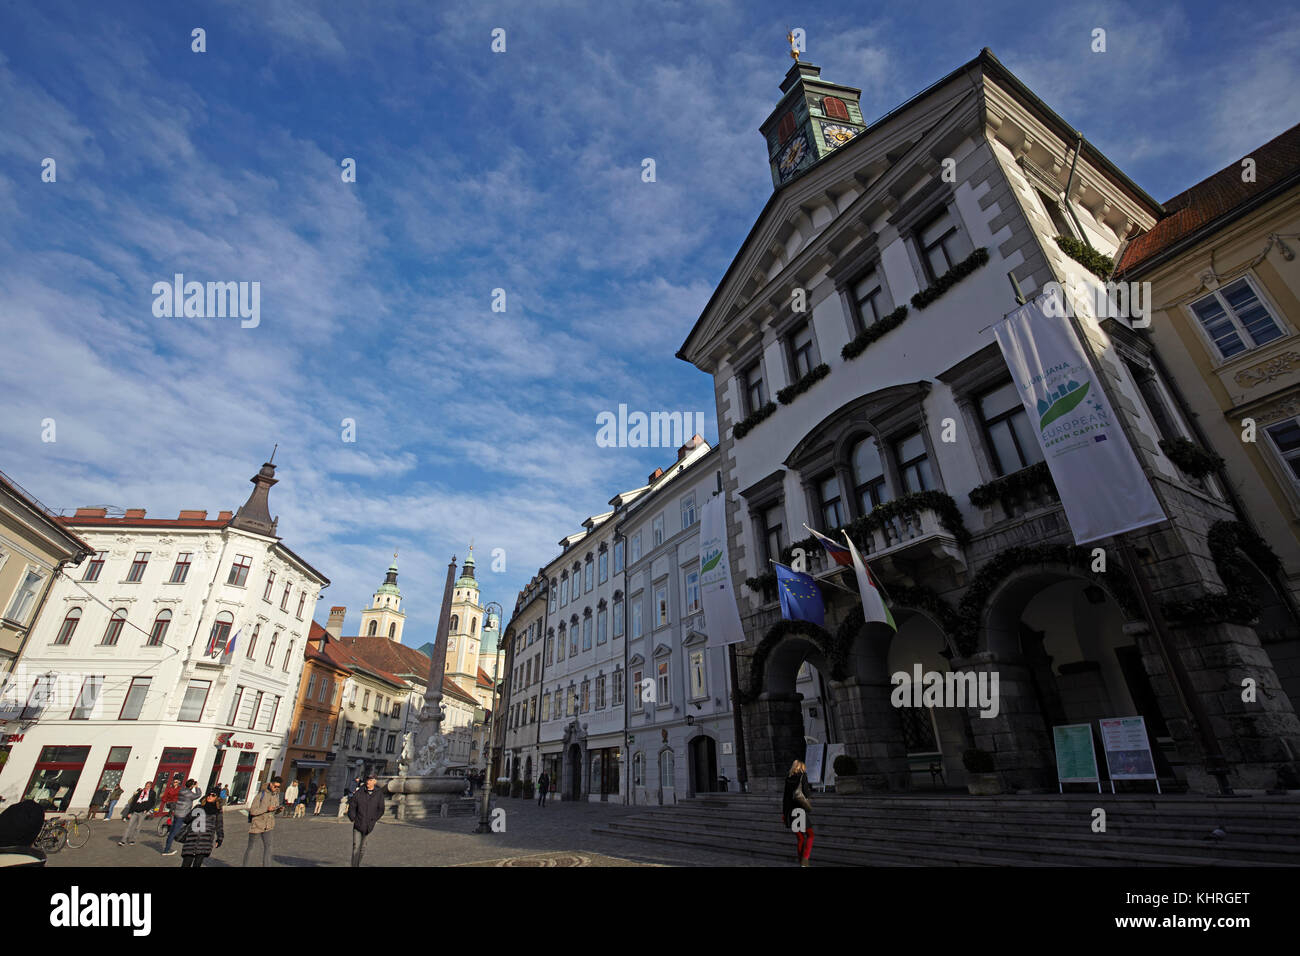 Square in Ljubljana, Slovenia Stock Photo